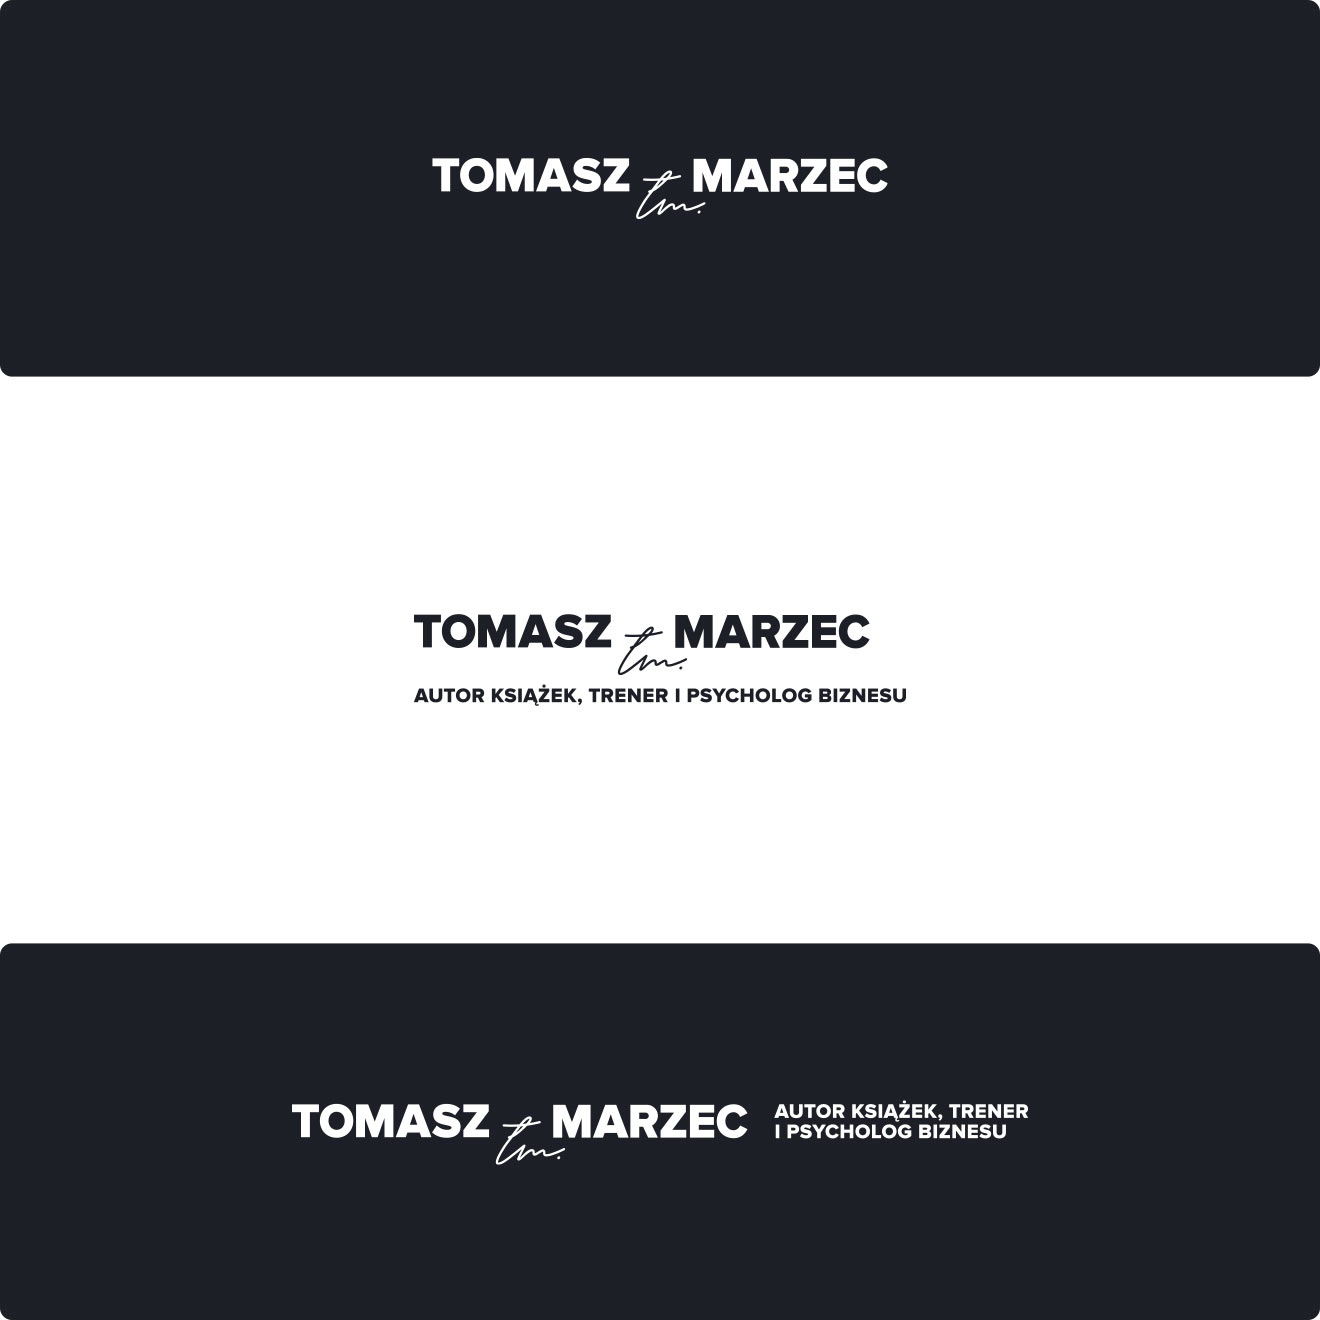 Tomasz Marzec - Różne Warianty Logo